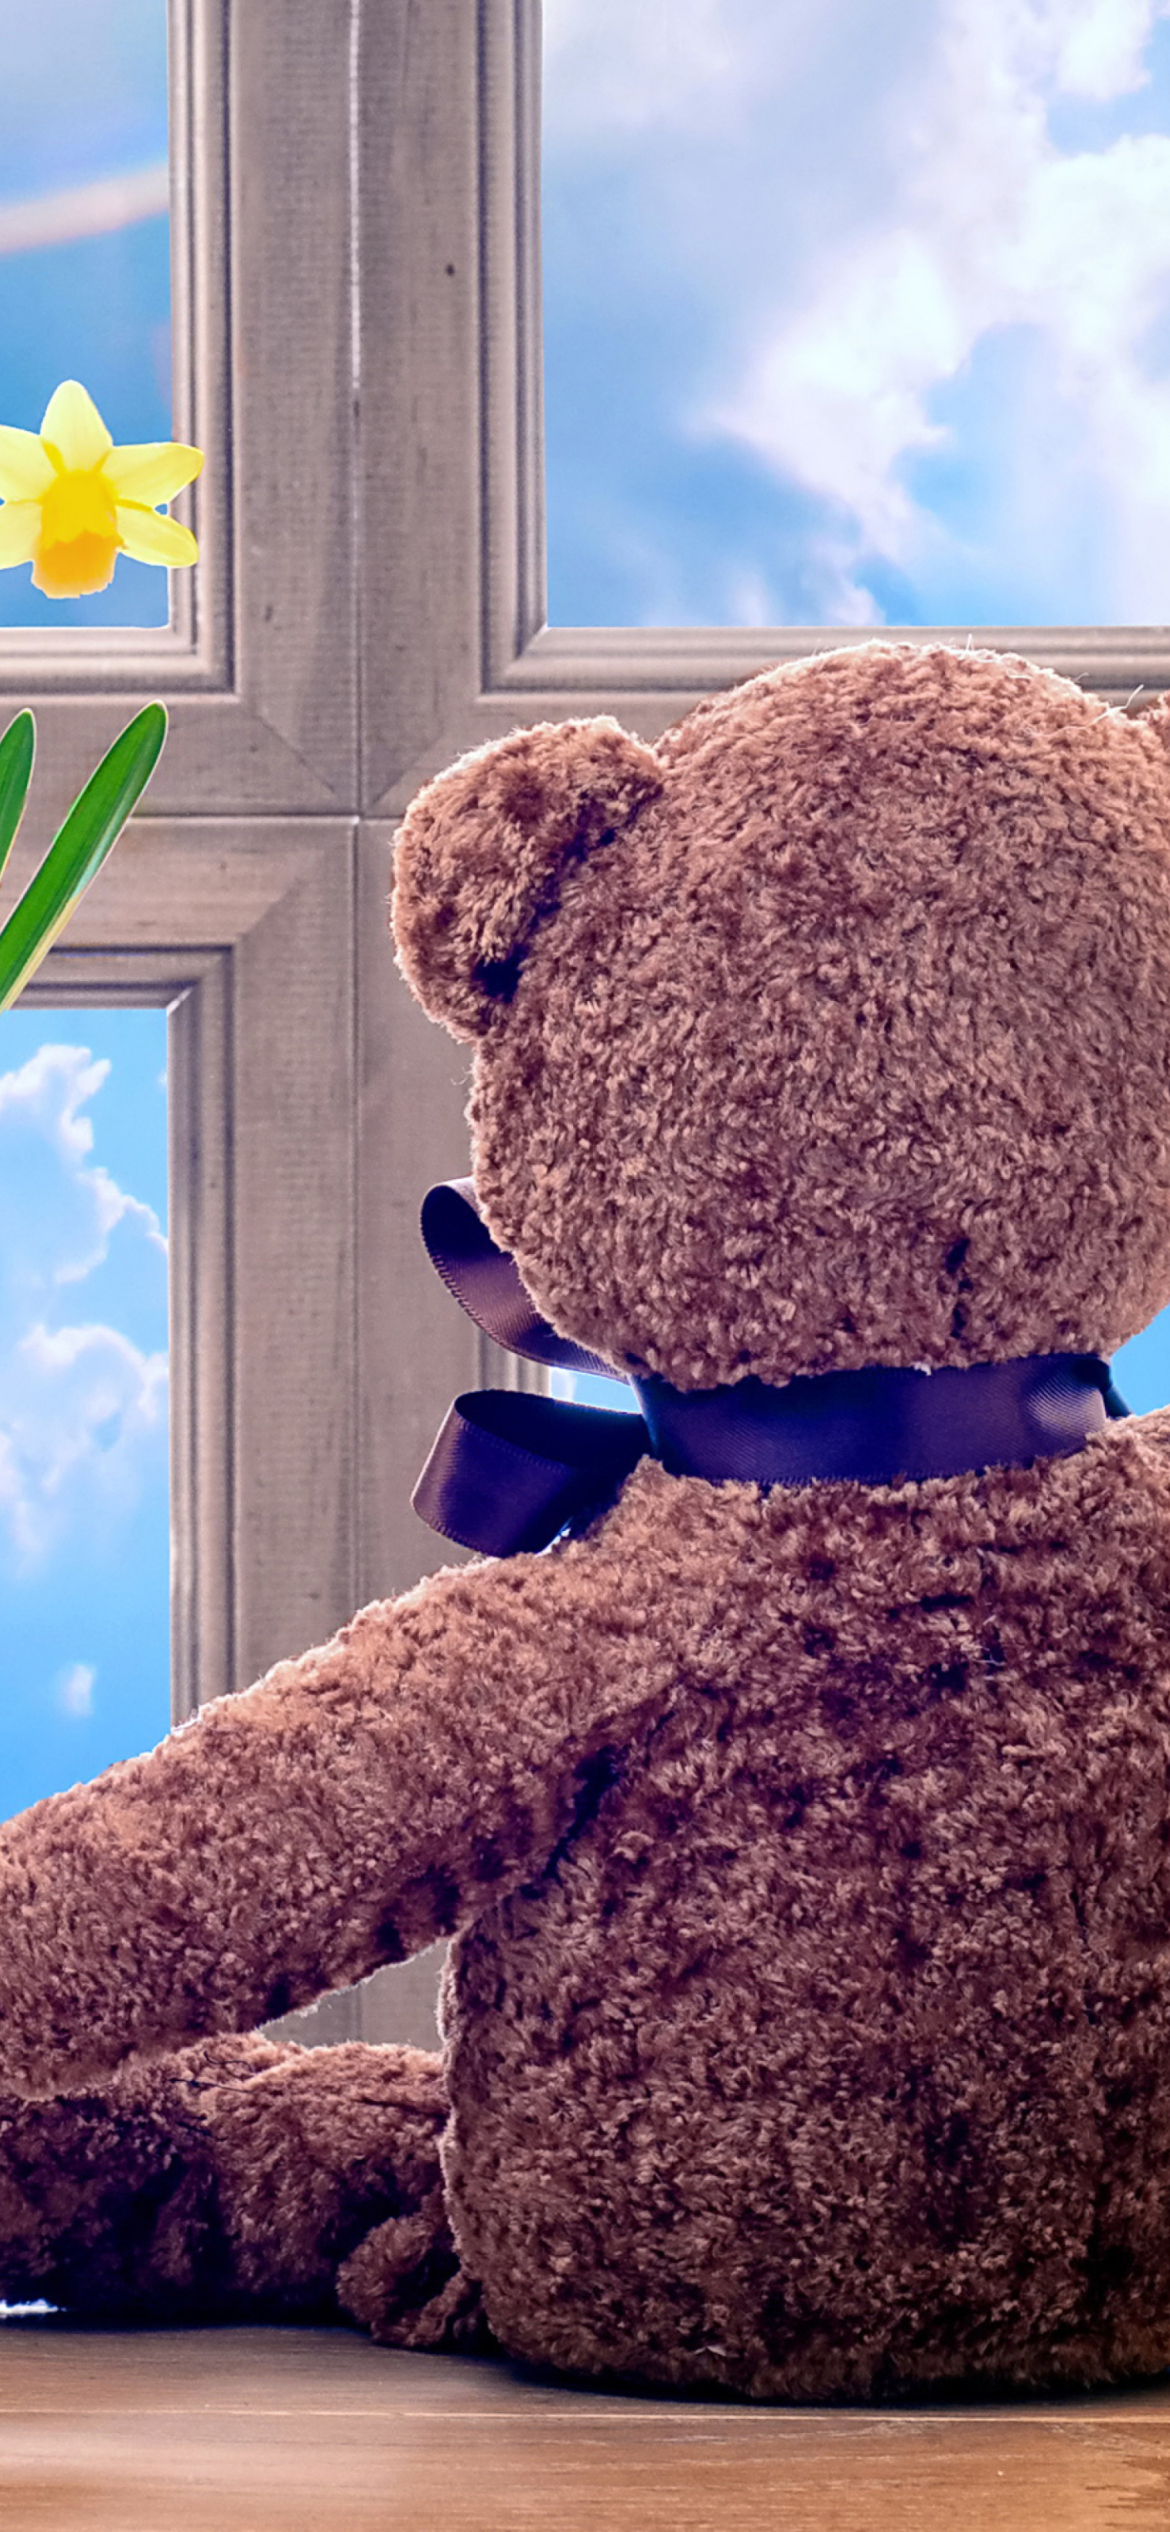 Fondo de pantalla Teddy Bear with Bouquet 1170x2532